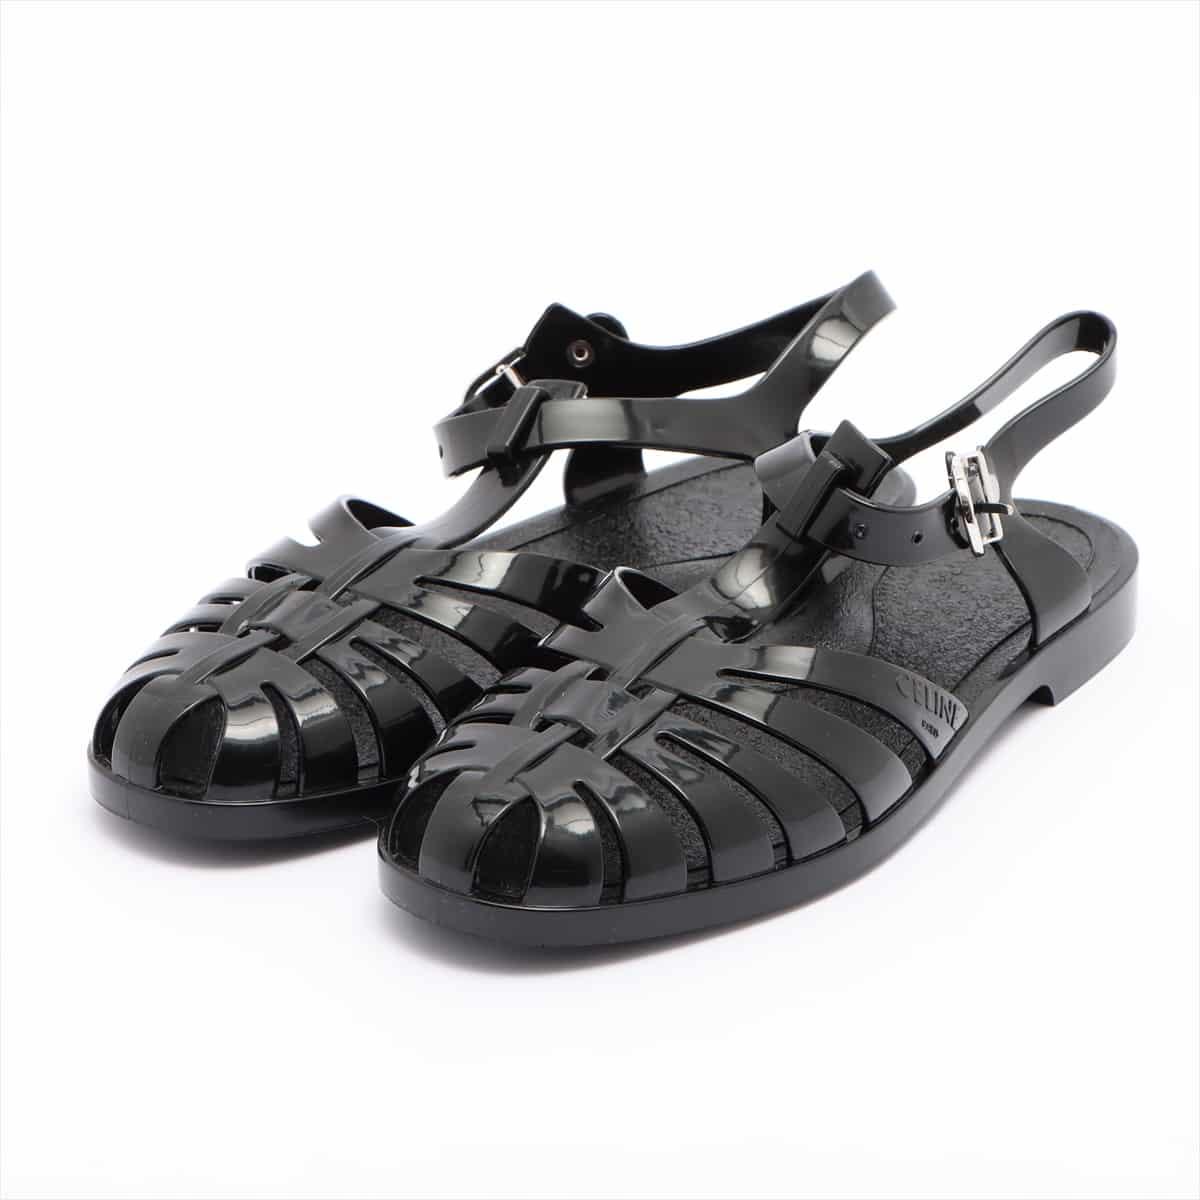 CELINE Rubber Beach sandals 39 Men's Black Ankle straps